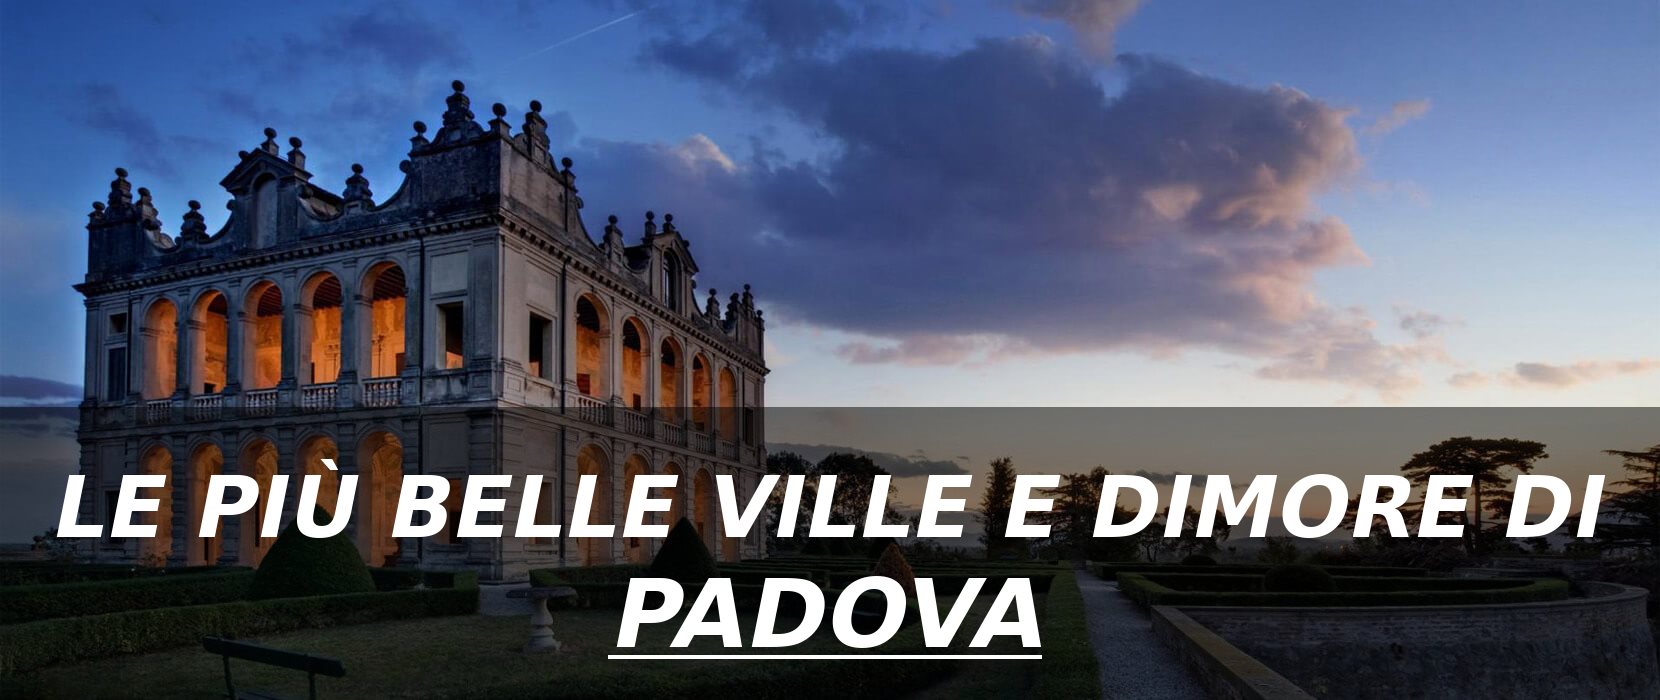 Le più belle ville e dimore di Padova